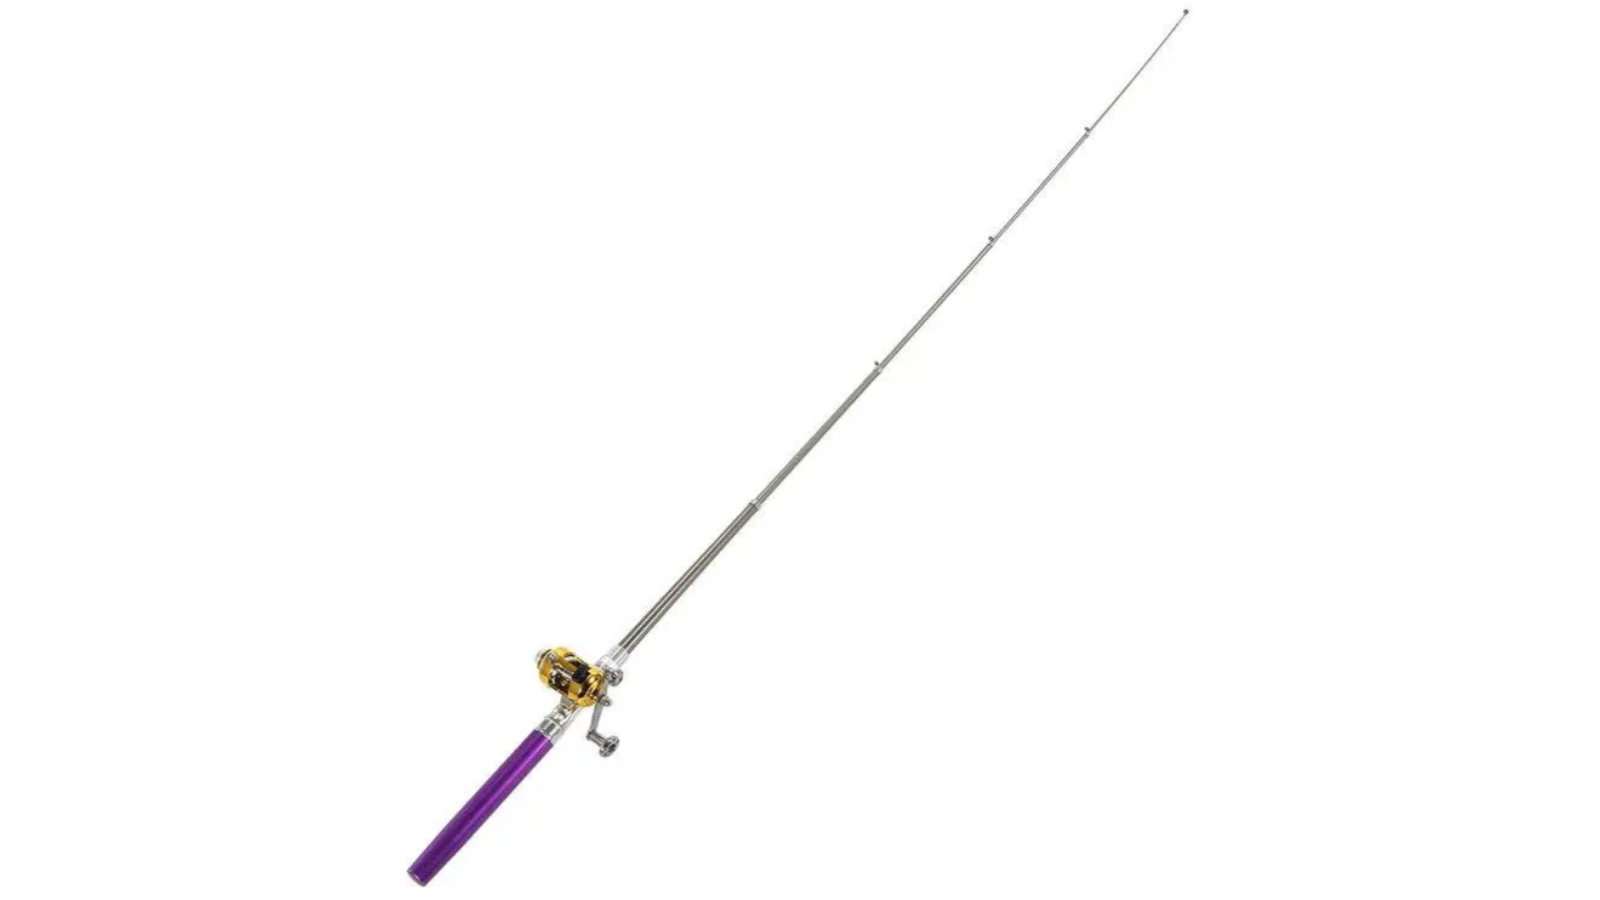 HOD Mini Telescopic Portable Pocket Fishing Rod Reel Combo Kit - Purple